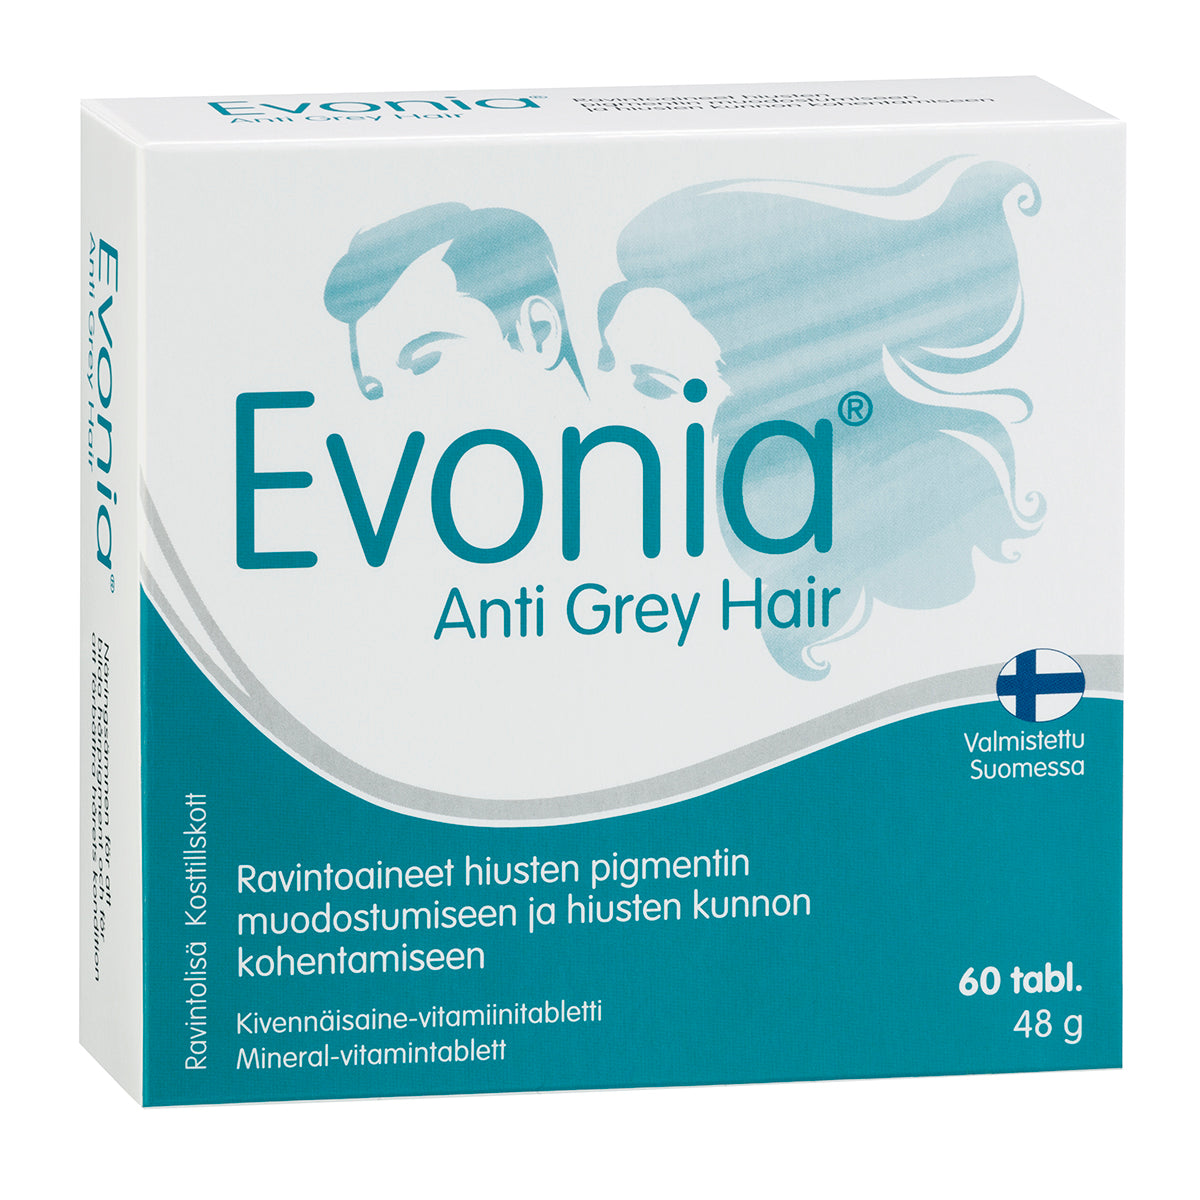 Evonia Anti Grey Hair-Hankintatukku-Hyvinvoinnin Tavaratalo